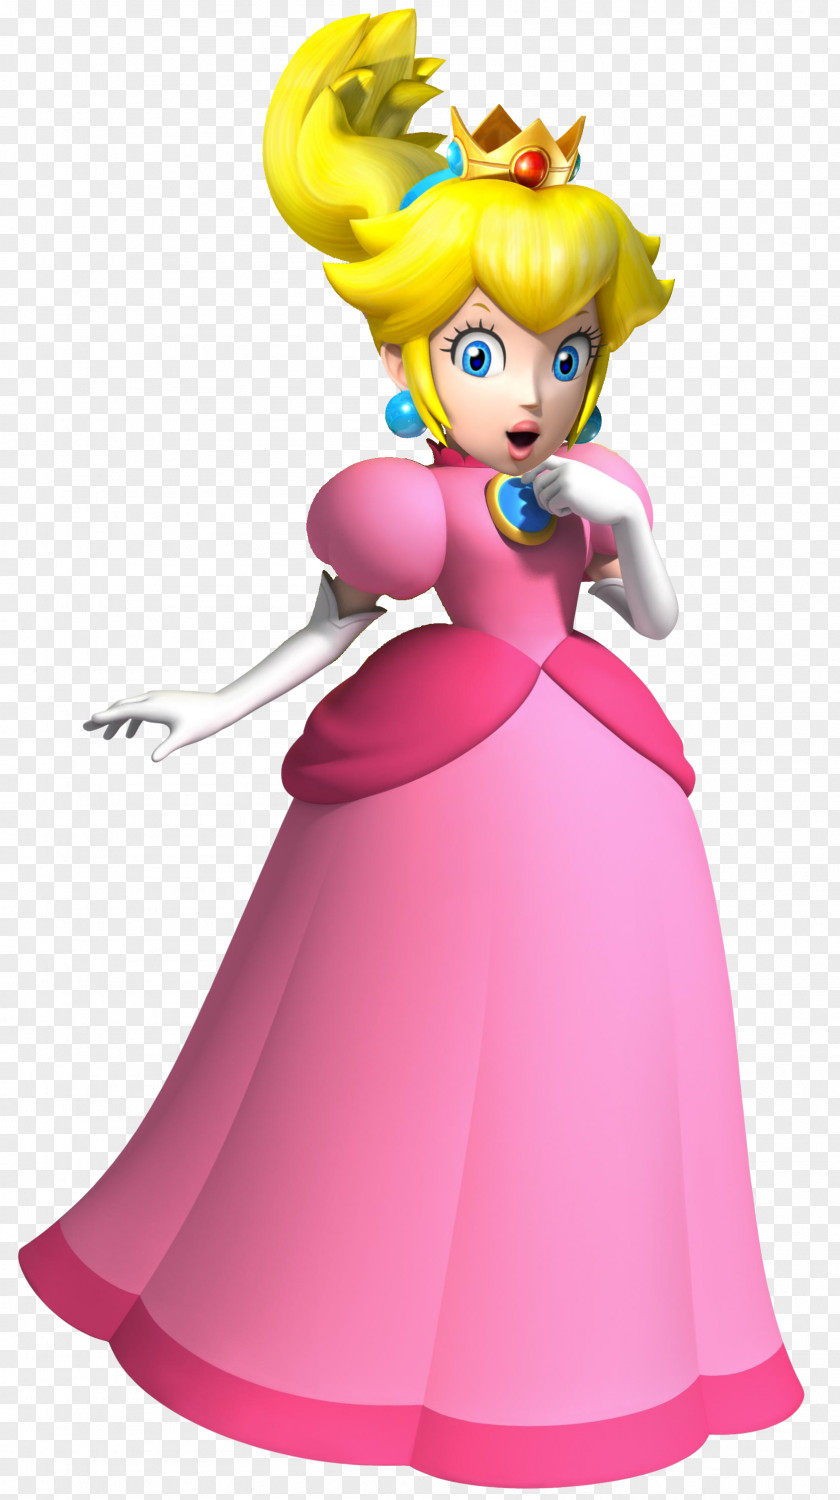 Peach Super Mario Bros. Galaxy 2 Princess PNG